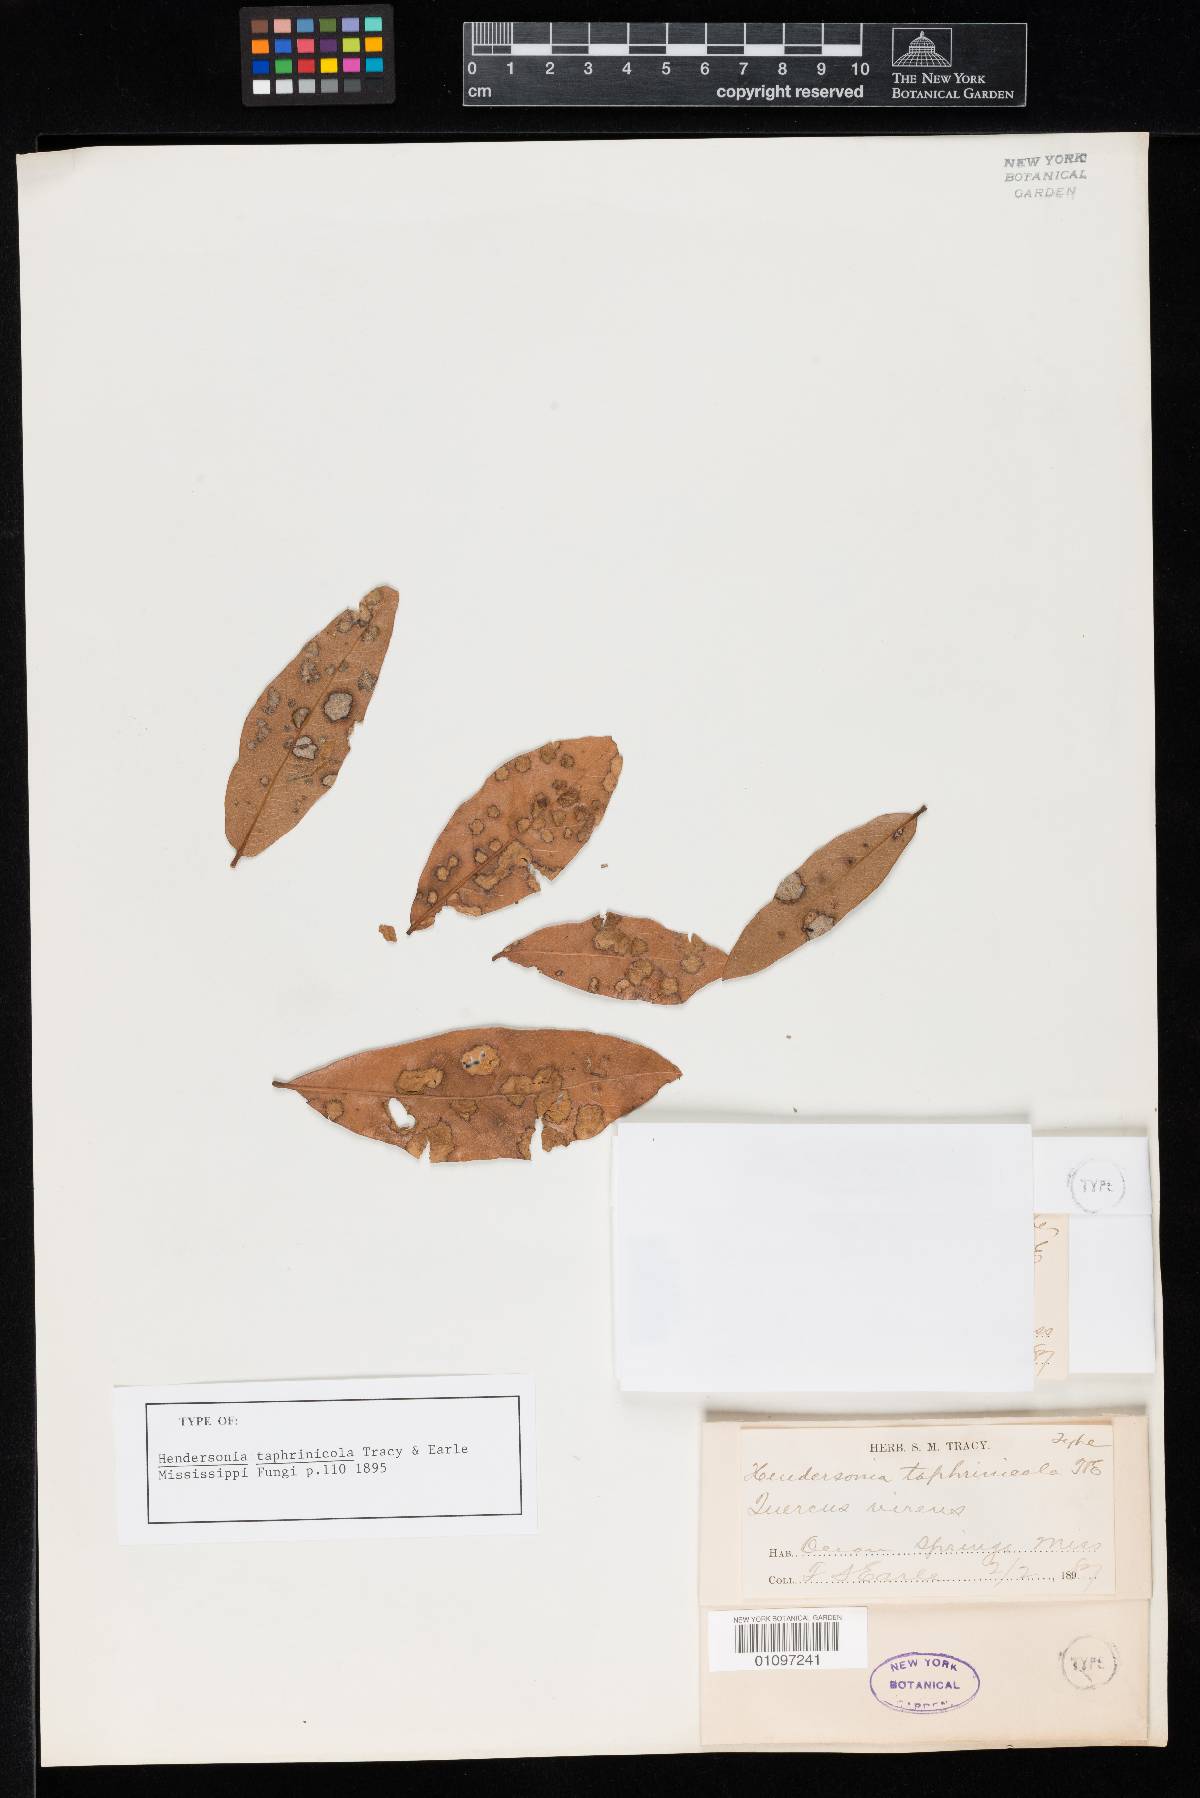 Hendersonia taphrinicola image